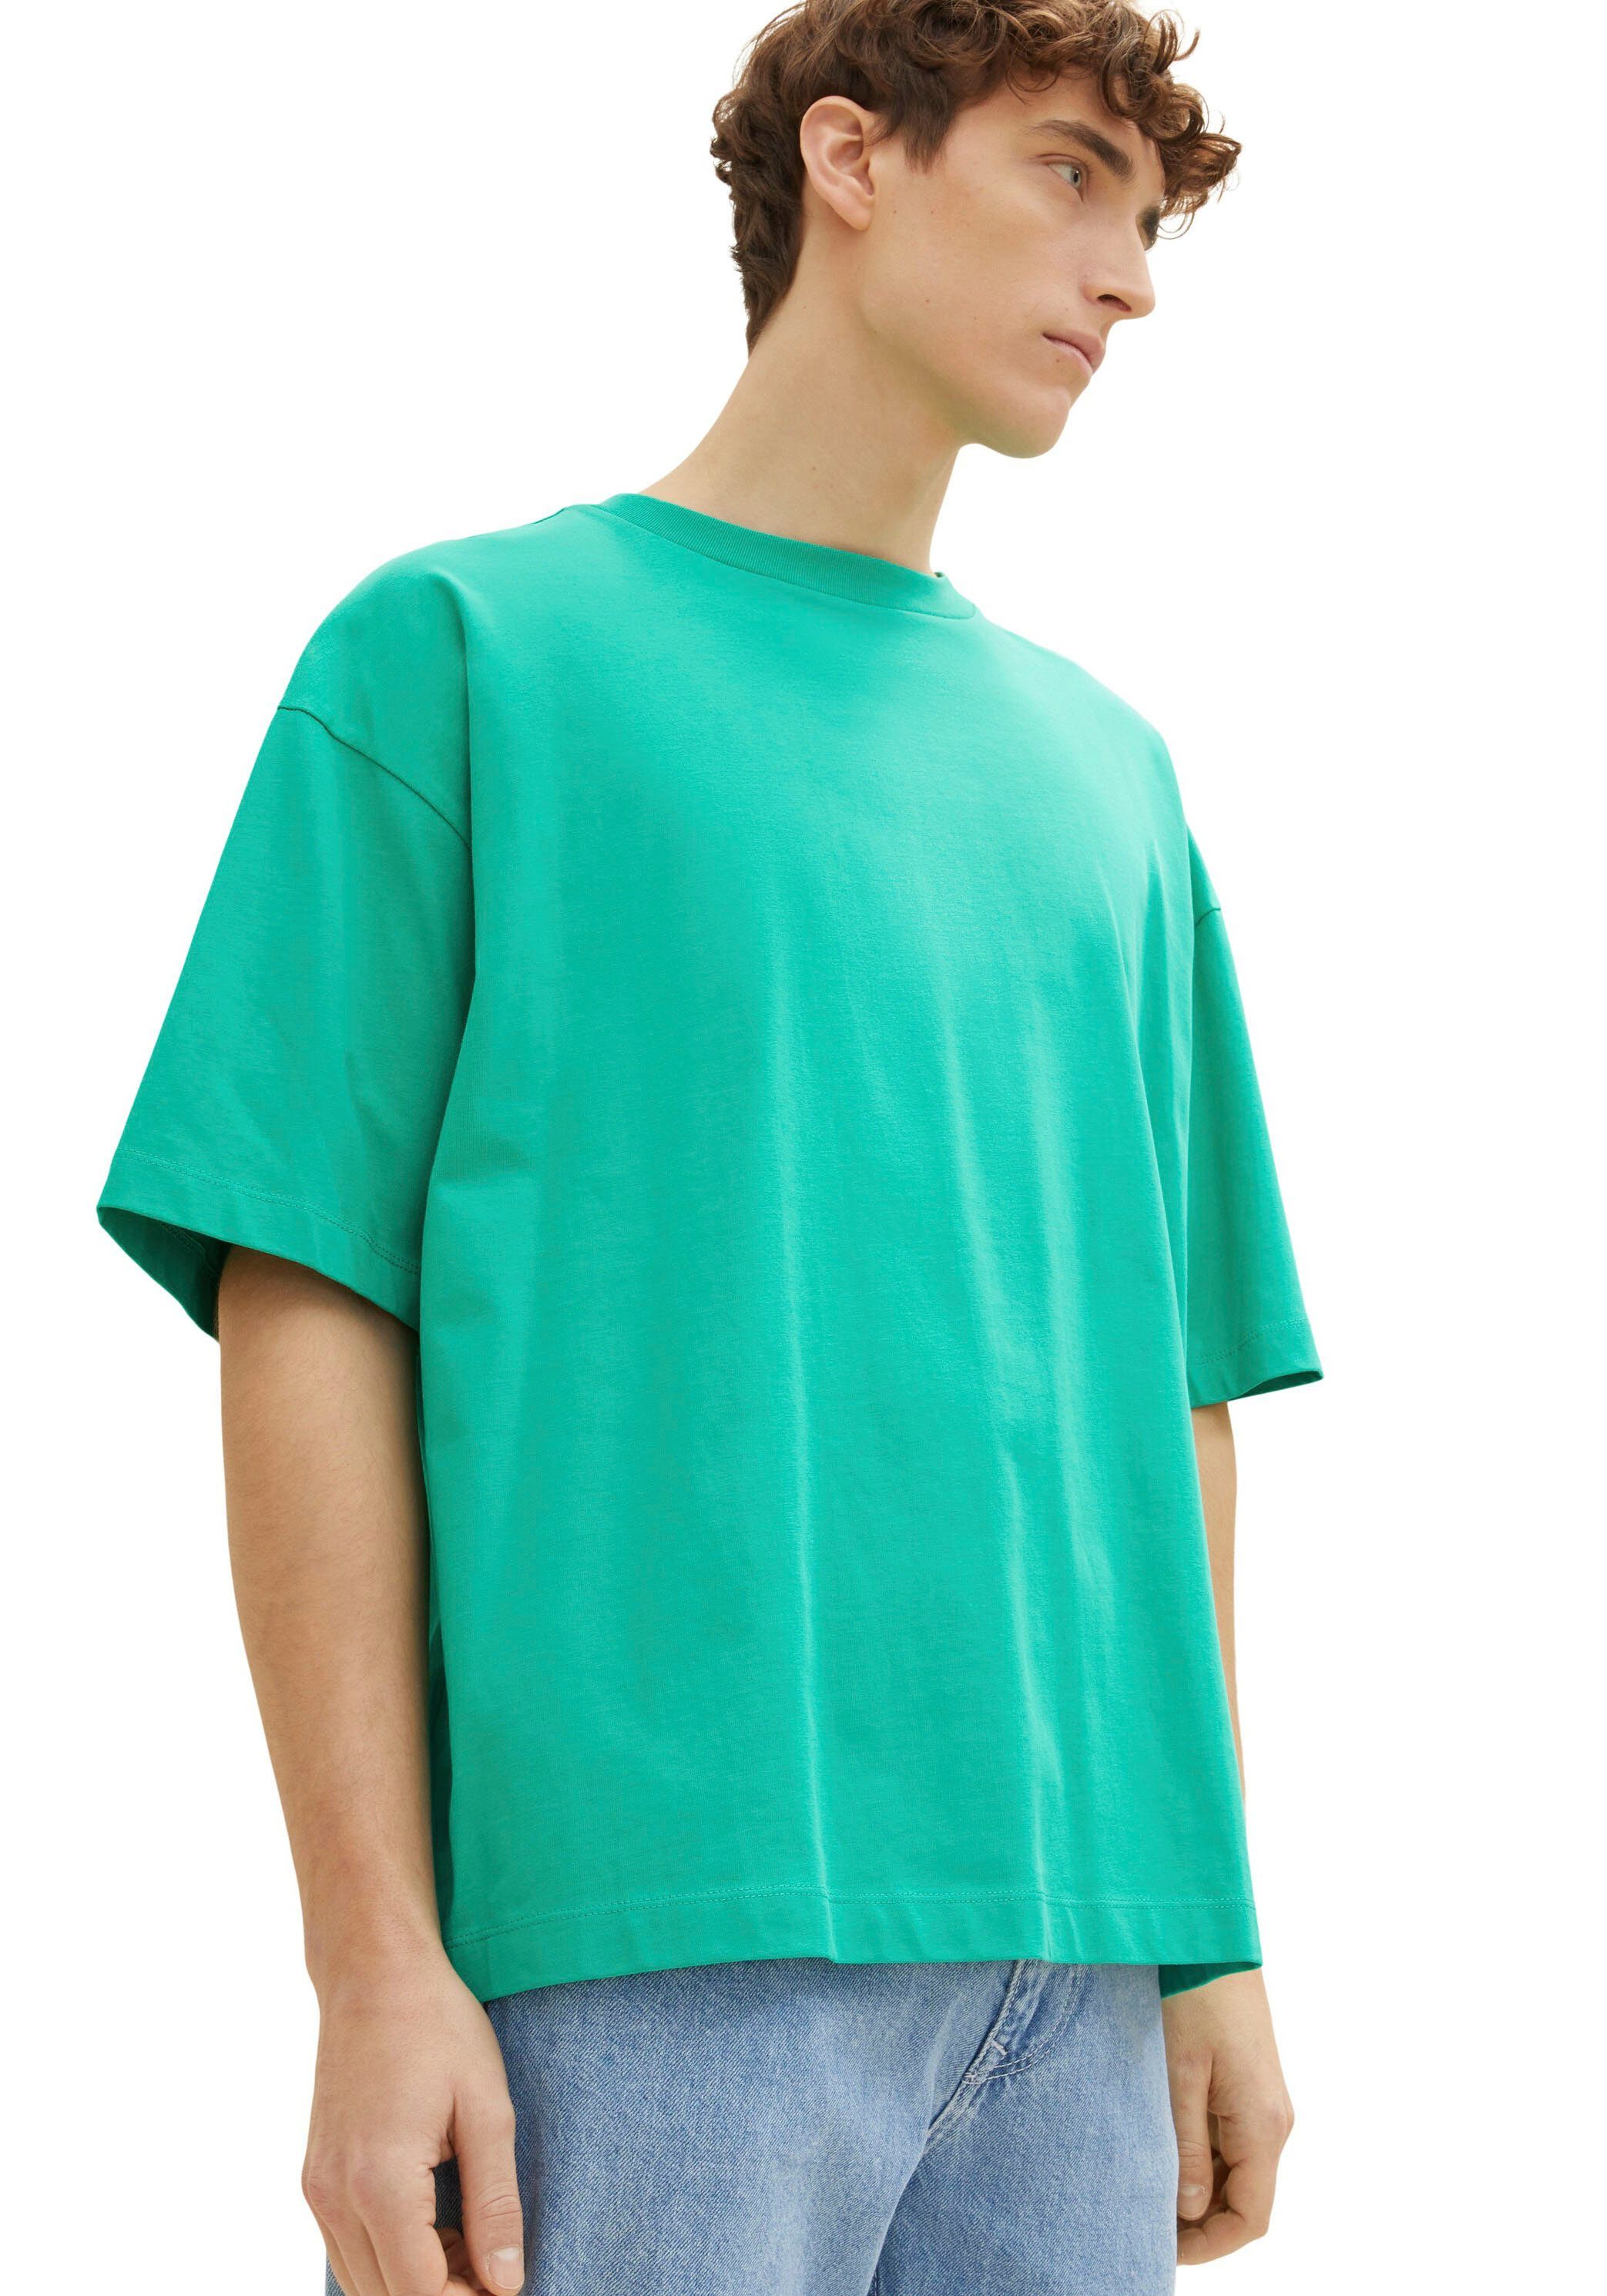 TAILOR mit Rundhalsausschnitt grün Denim Oversize-Shirt TOM